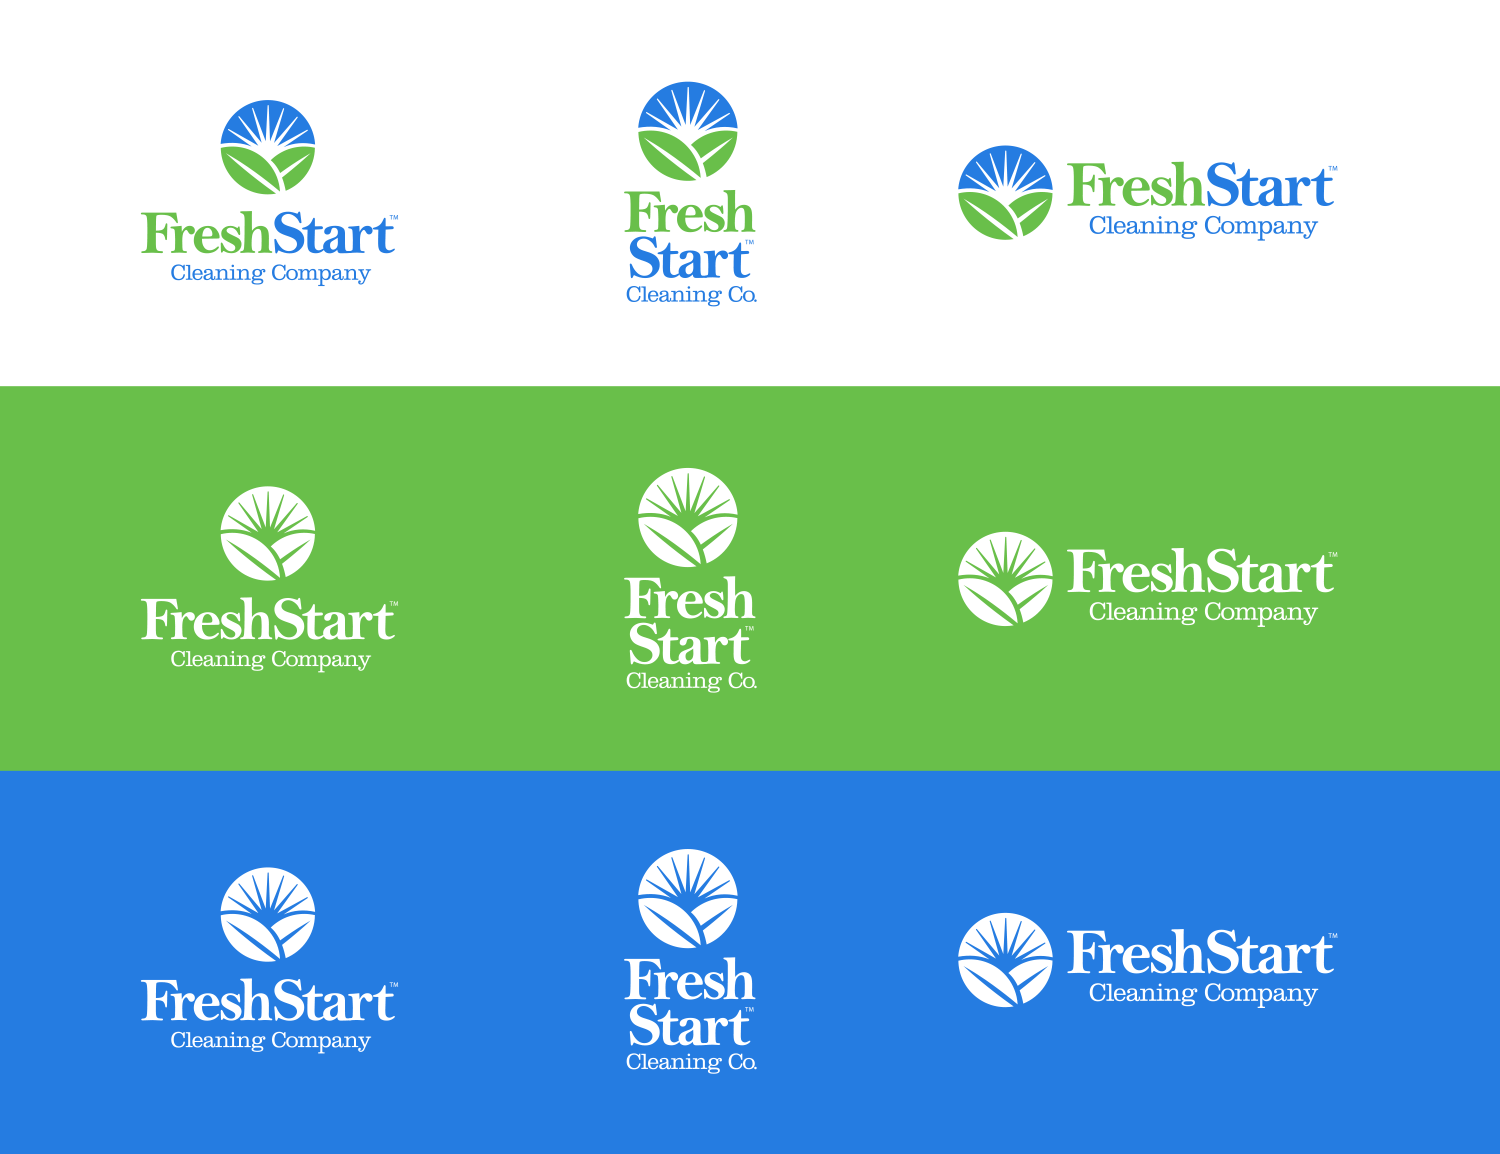 Fresh Start final logo lockups